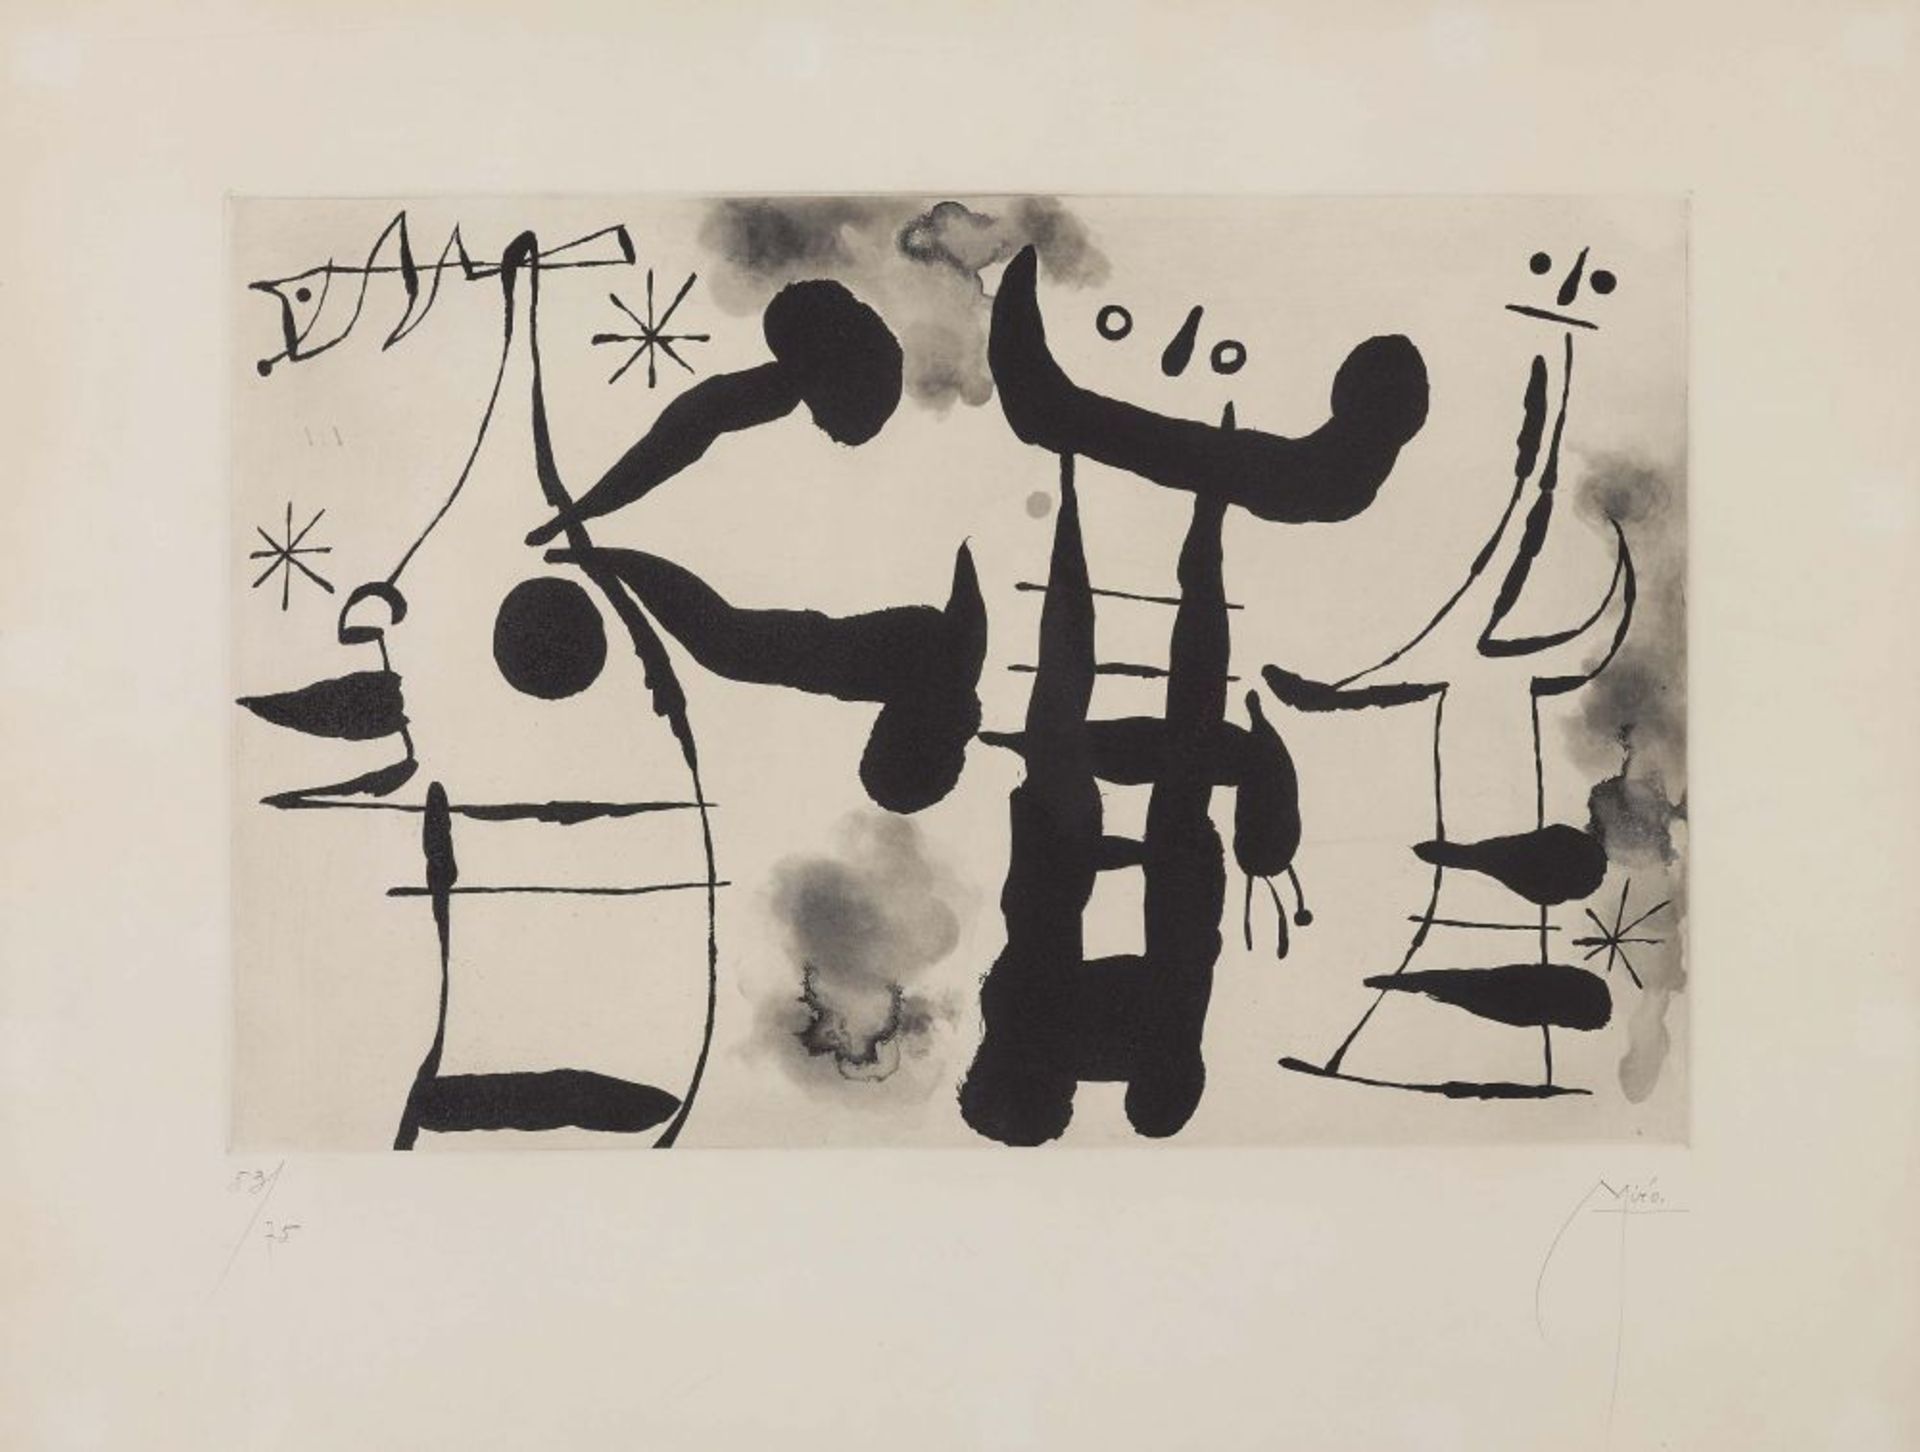 Miró, Joan 1893 Barcelona - 1983 Palma de Mallorca  Les Philosophes I. 1958   Aquatintaradierung auf